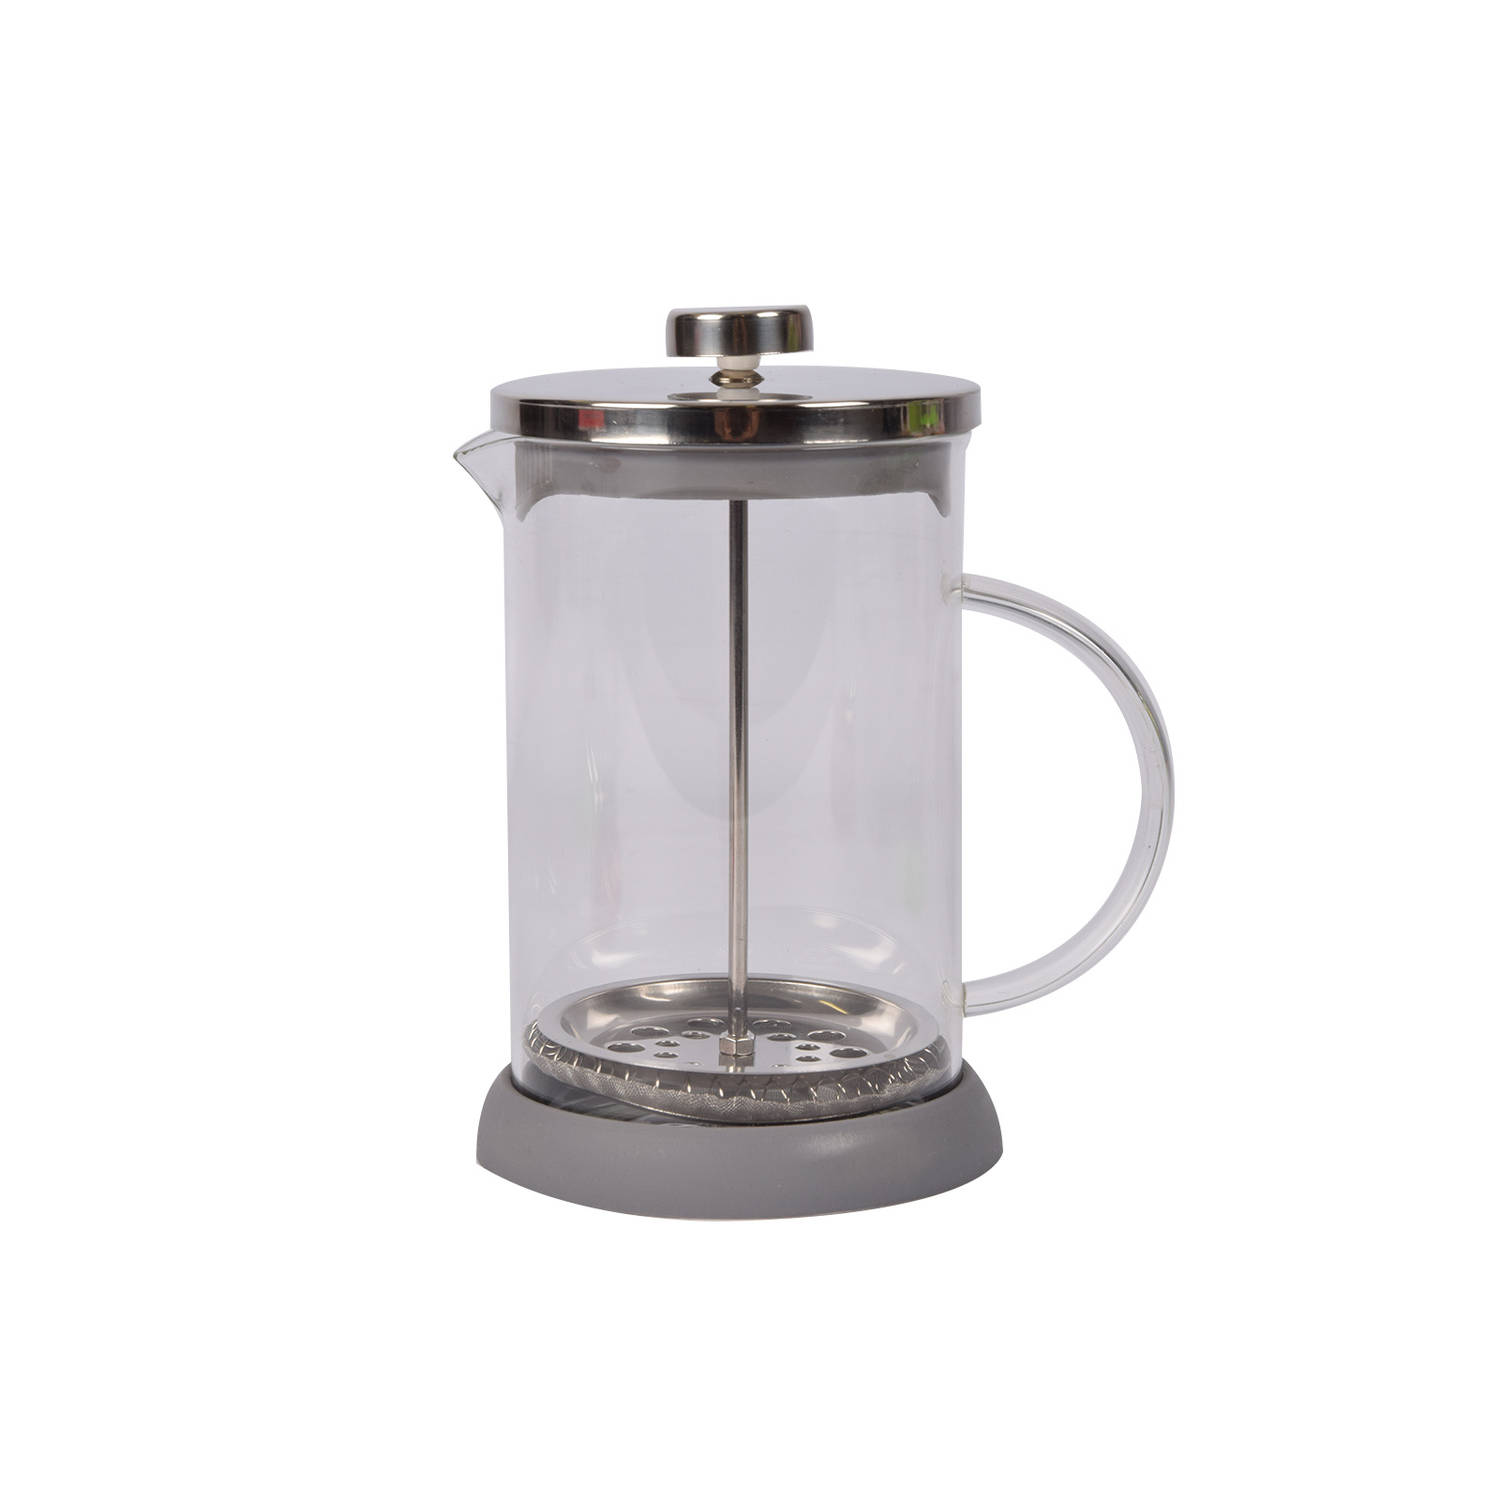 Cafetière - Theepot Grijze Glazen - 800 ml, Ideaal voor 2 Kopjes - Perfect voor Koffie & Thee Liefhebbers